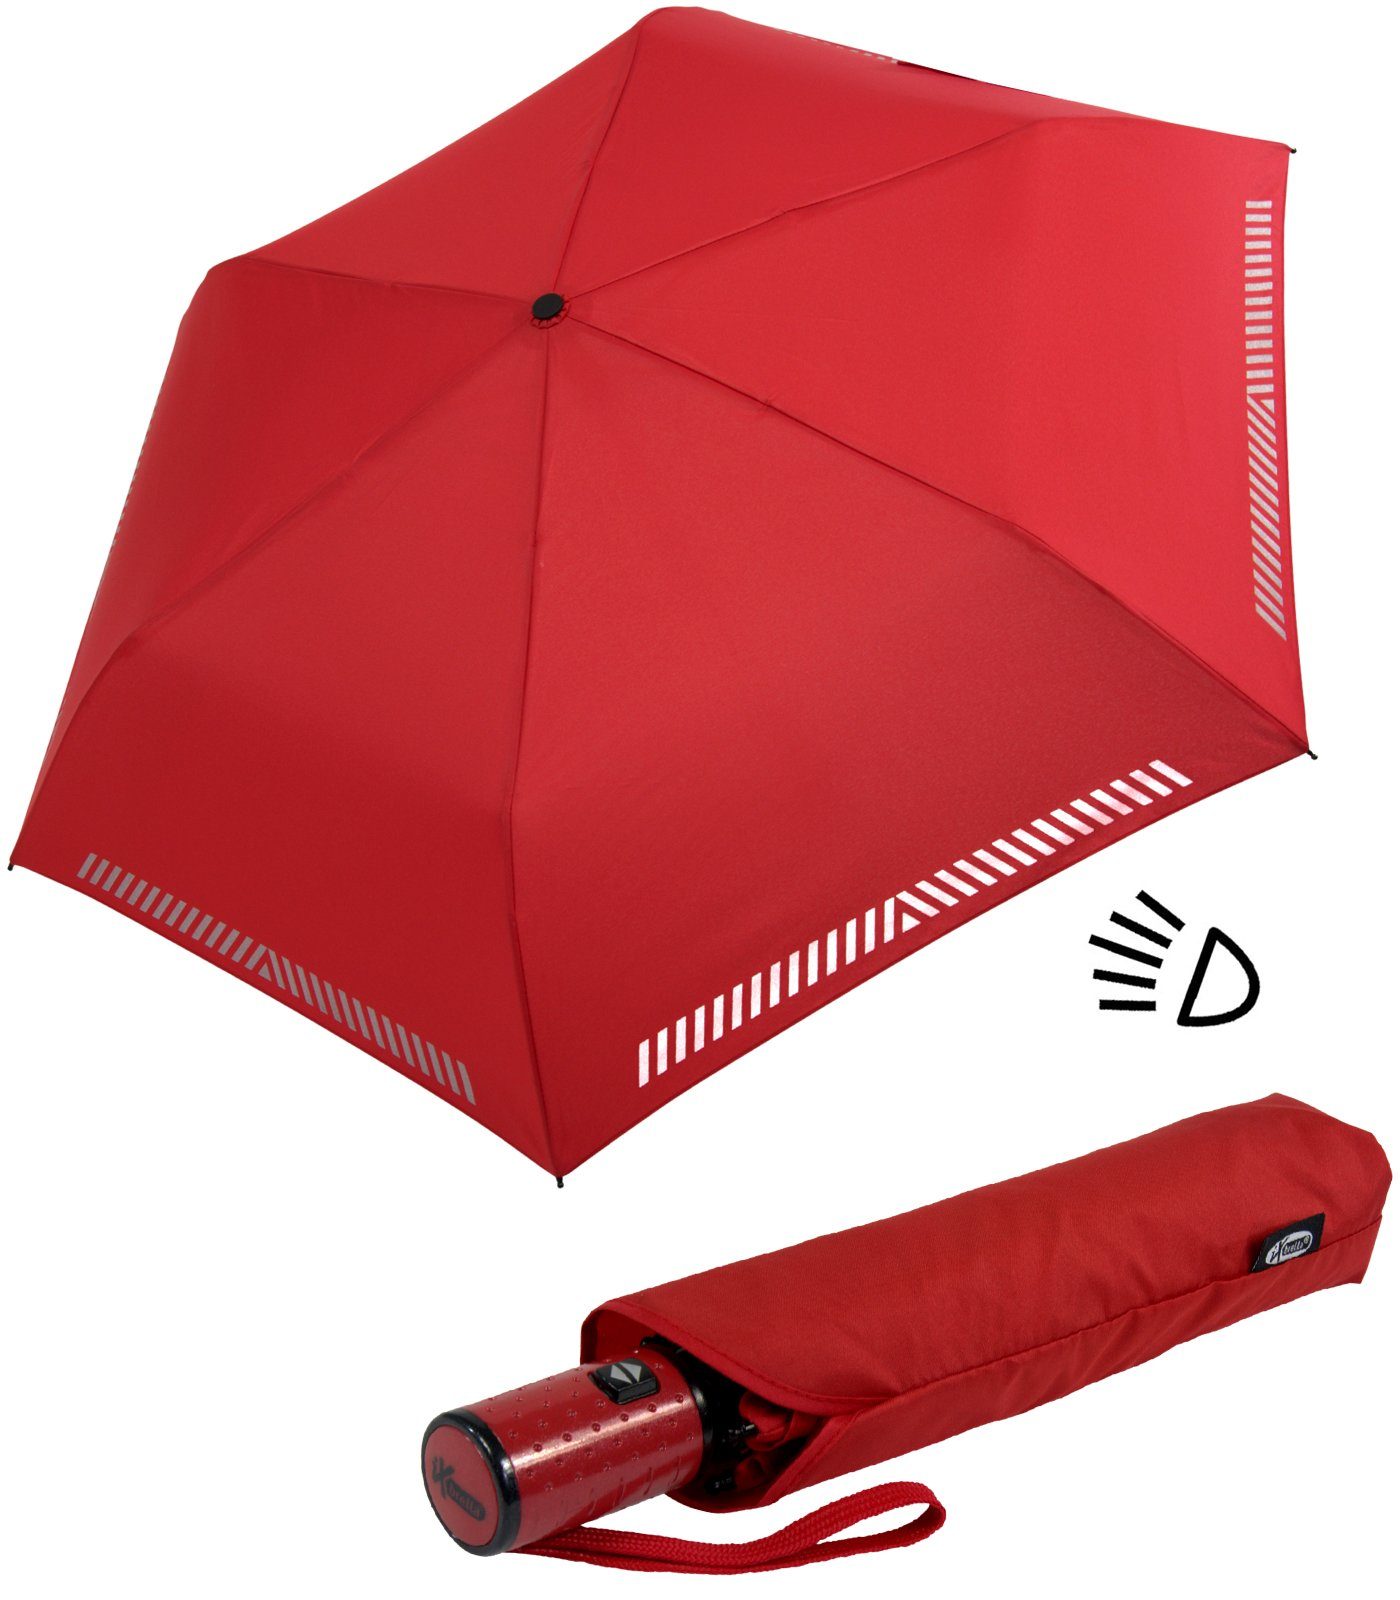 iX-brella Taschenregenschirm Kinderschirm mit Auf-Zu-Automatik, reflektierend, Sicherheit durch Reflex-Streifen - rot